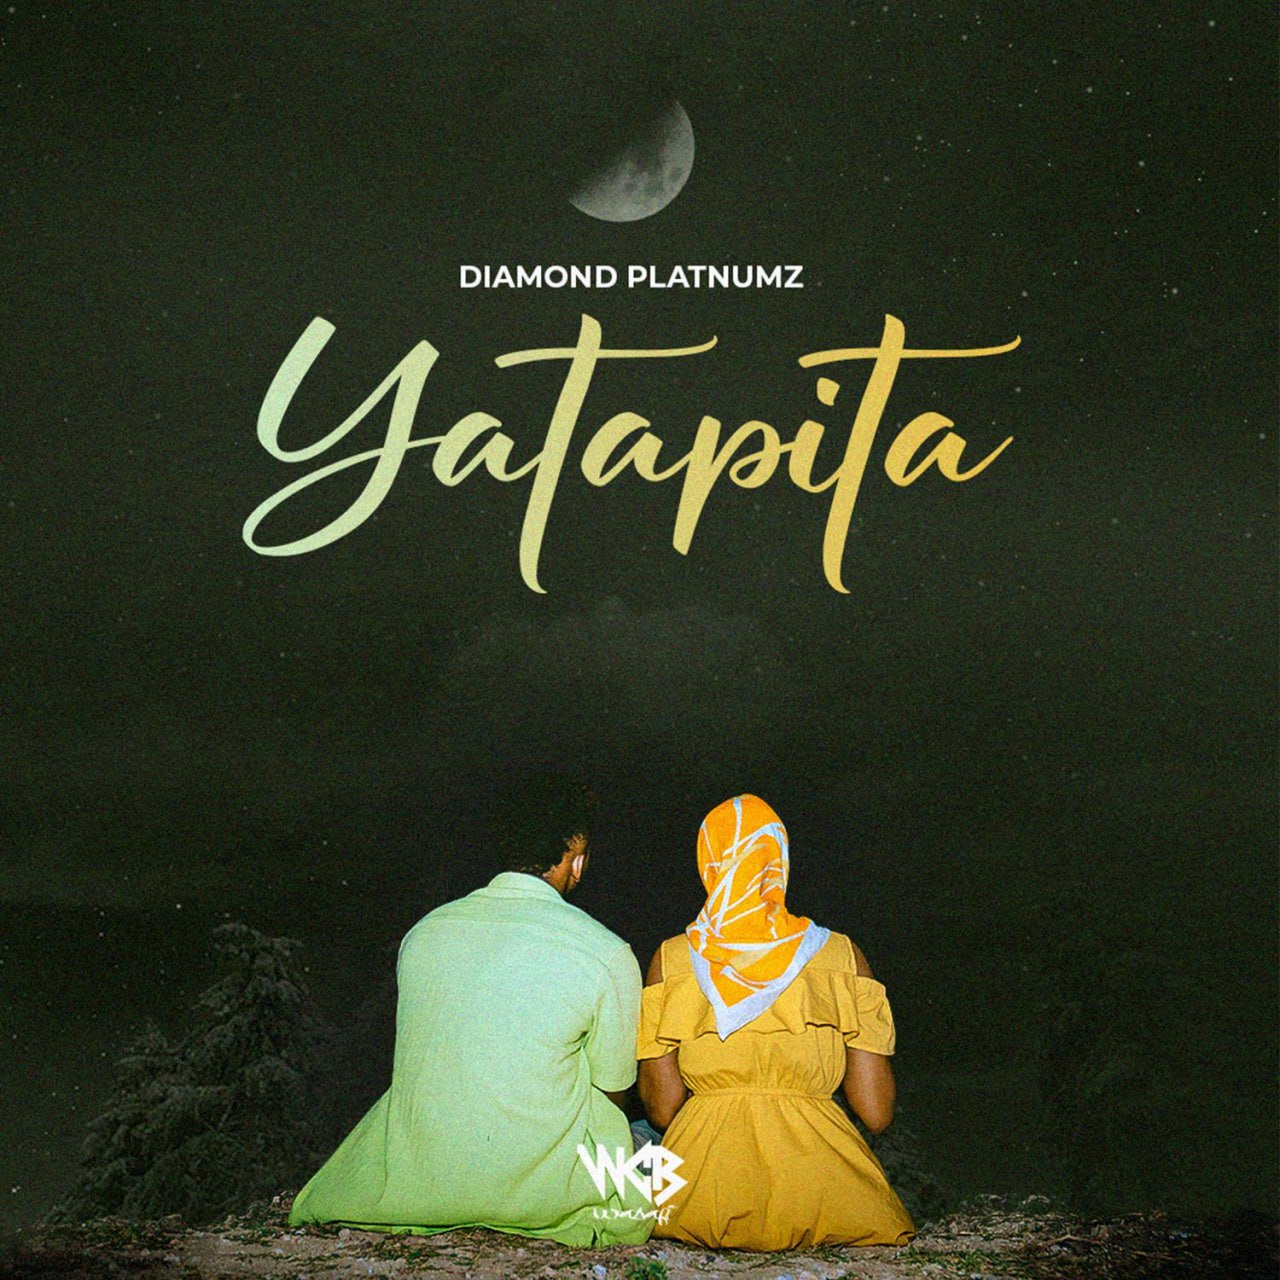 Yatapita - Diamond Platnumz